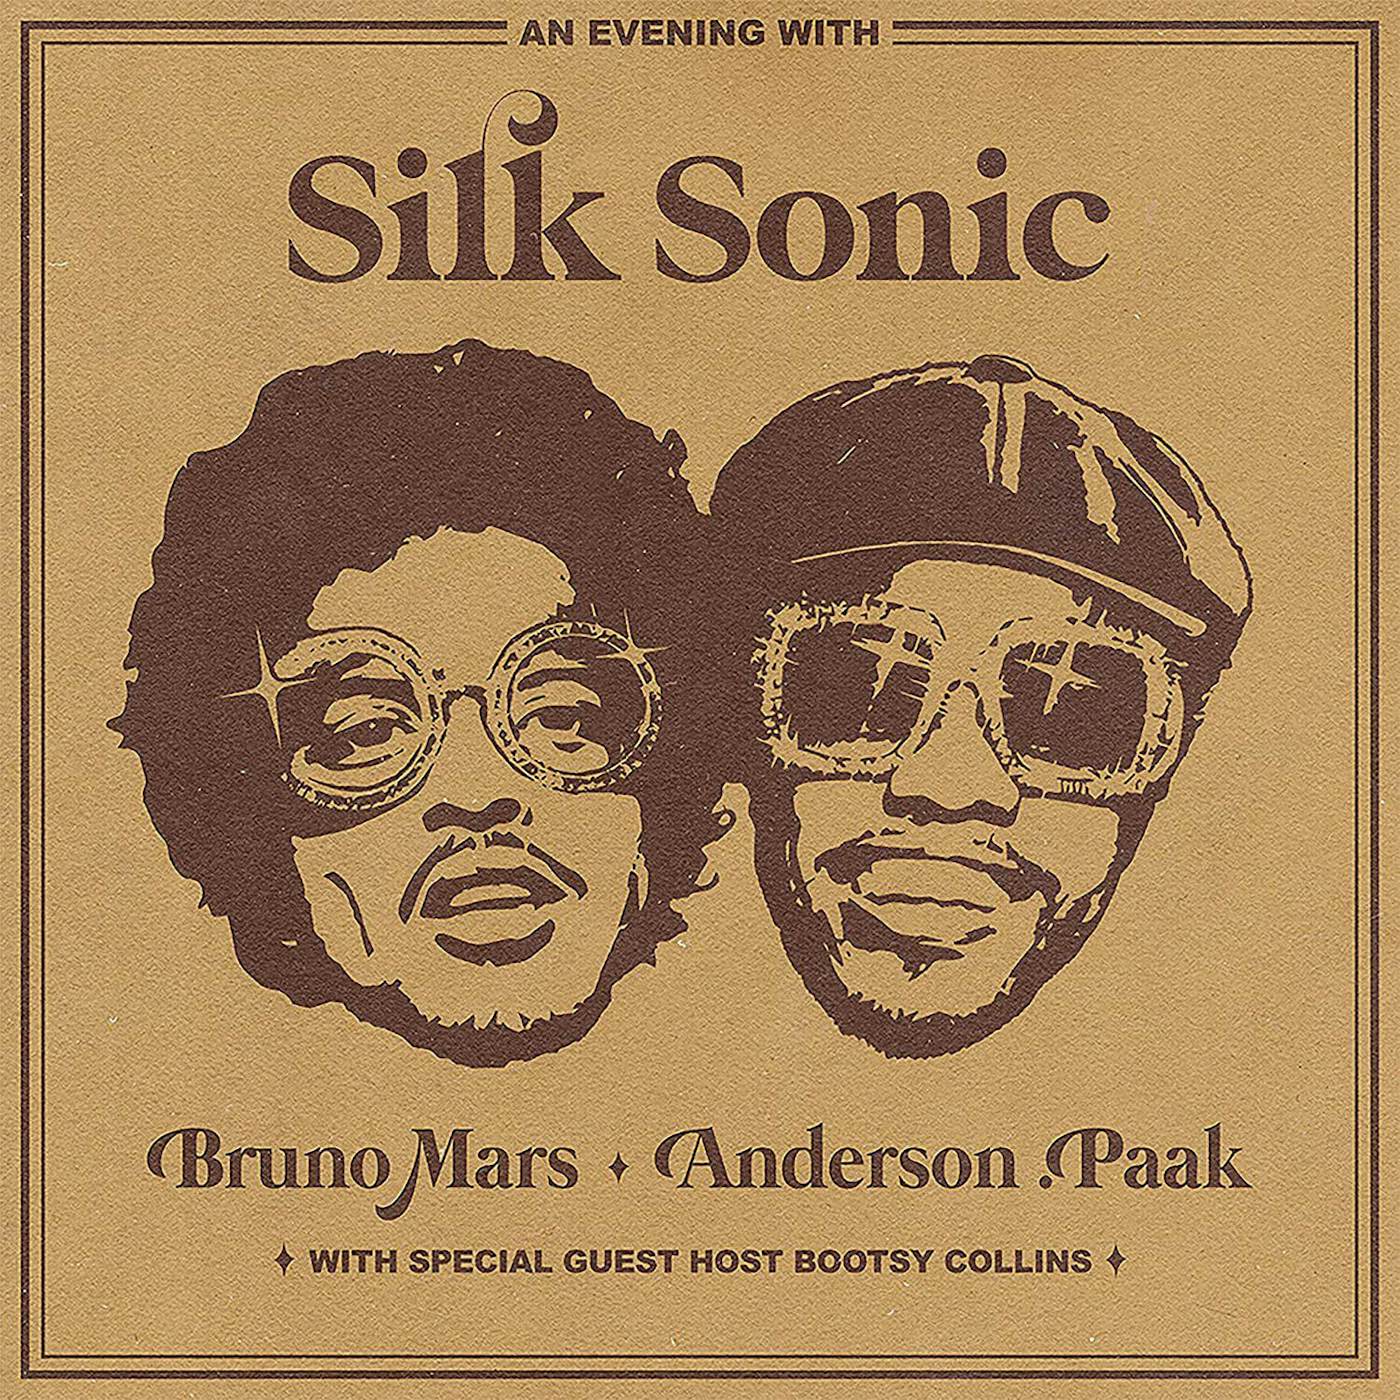 Bruno Mars, Anderson .Paak, Silk Sonic - Skate (Piano solo